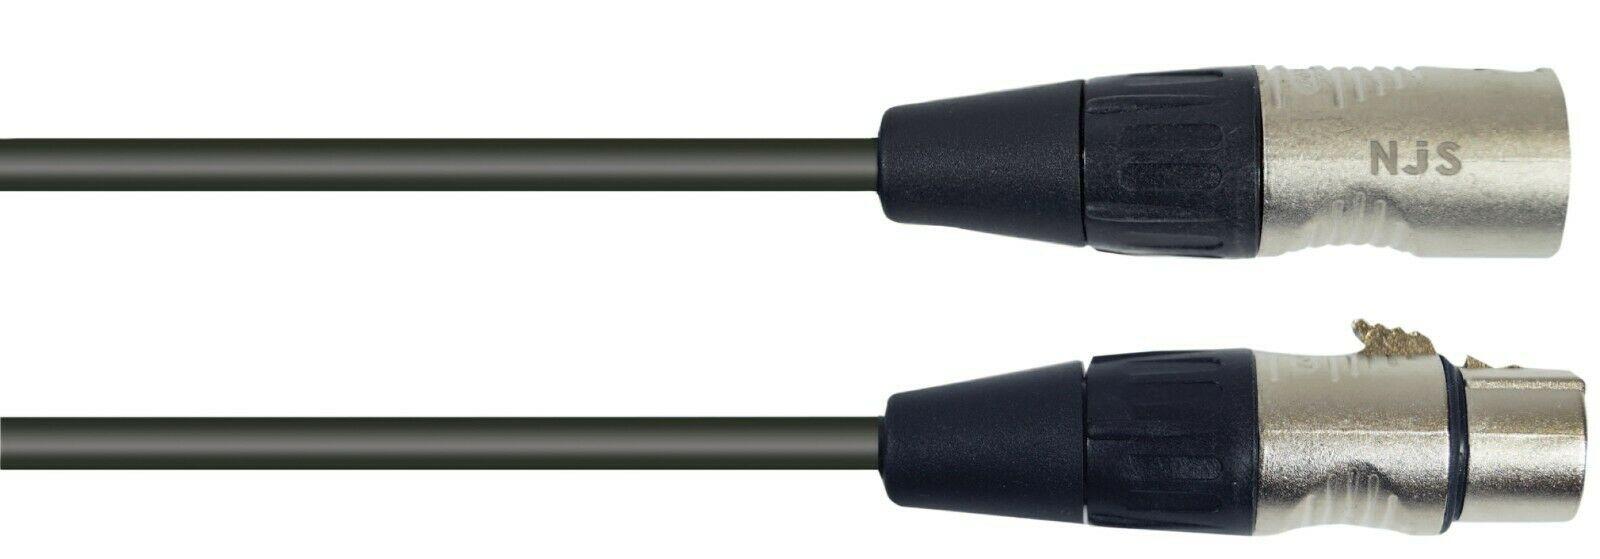 Hi Quality NJS XLR to XLR 5 Pin DMX Cable 4 Variants